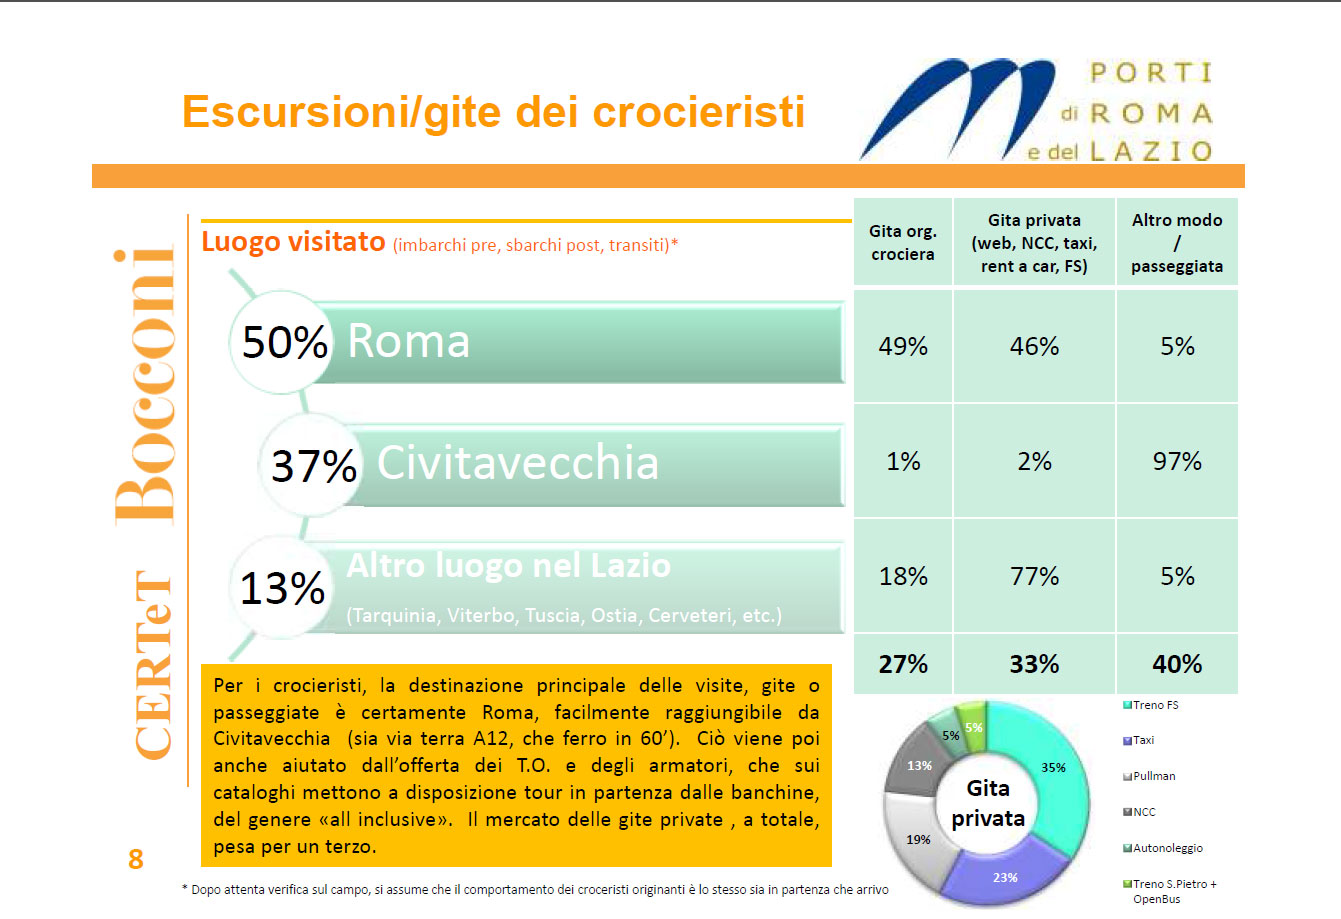 De los más de 2 millones de pasajeros de cruceros, el 50% se dirige a Roma, el 37% se queda en Civitavecchia y el 13% elige otras destinaciones en los alrededores